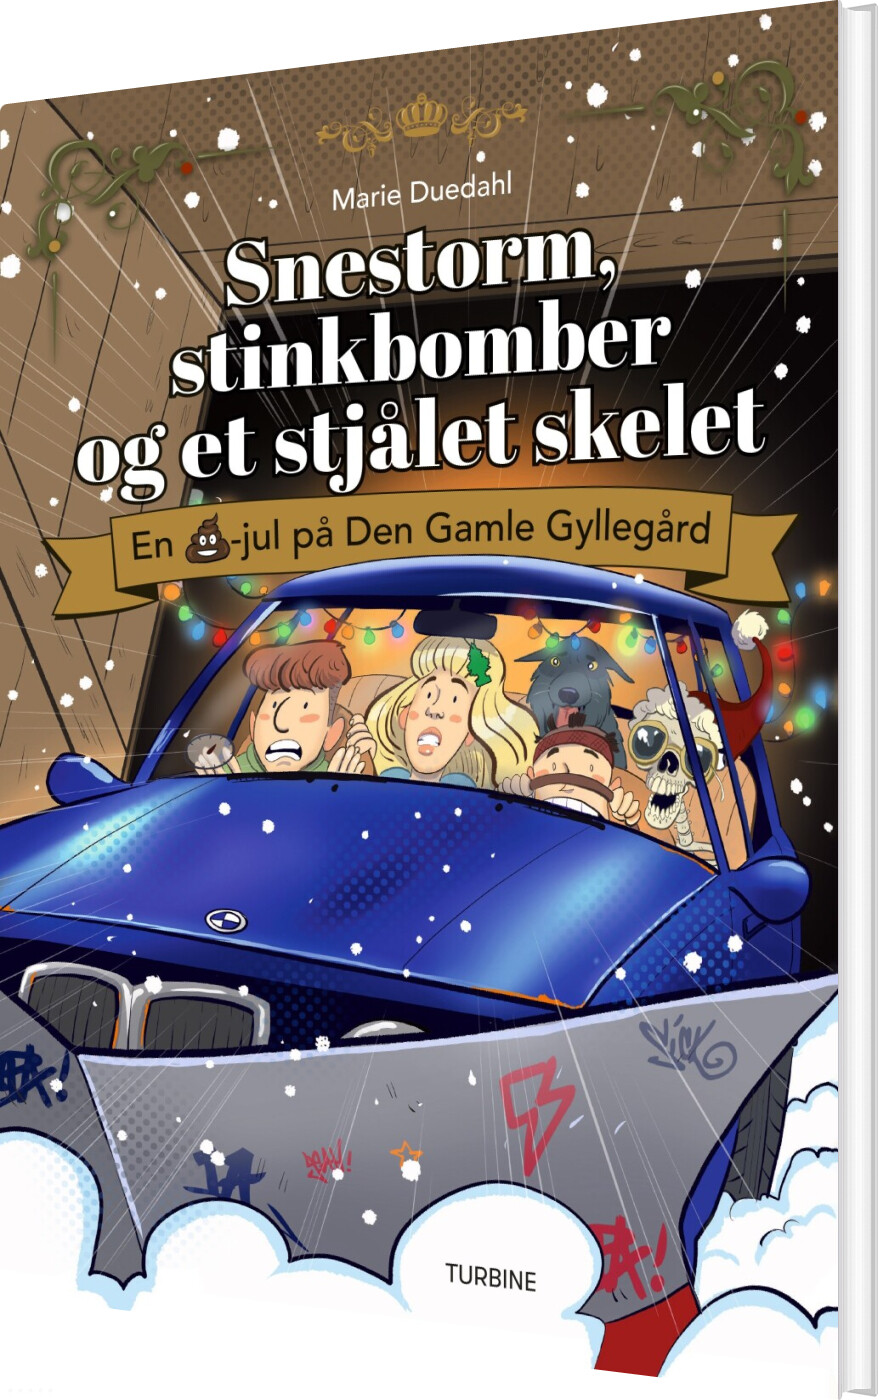 Billede af Snestorm, Stinkbomber Og Et Stjålet Skelet - En Lortejul På Den Gamle Gyllegård - Marie Duedahl - Bog hos Gucca.dk